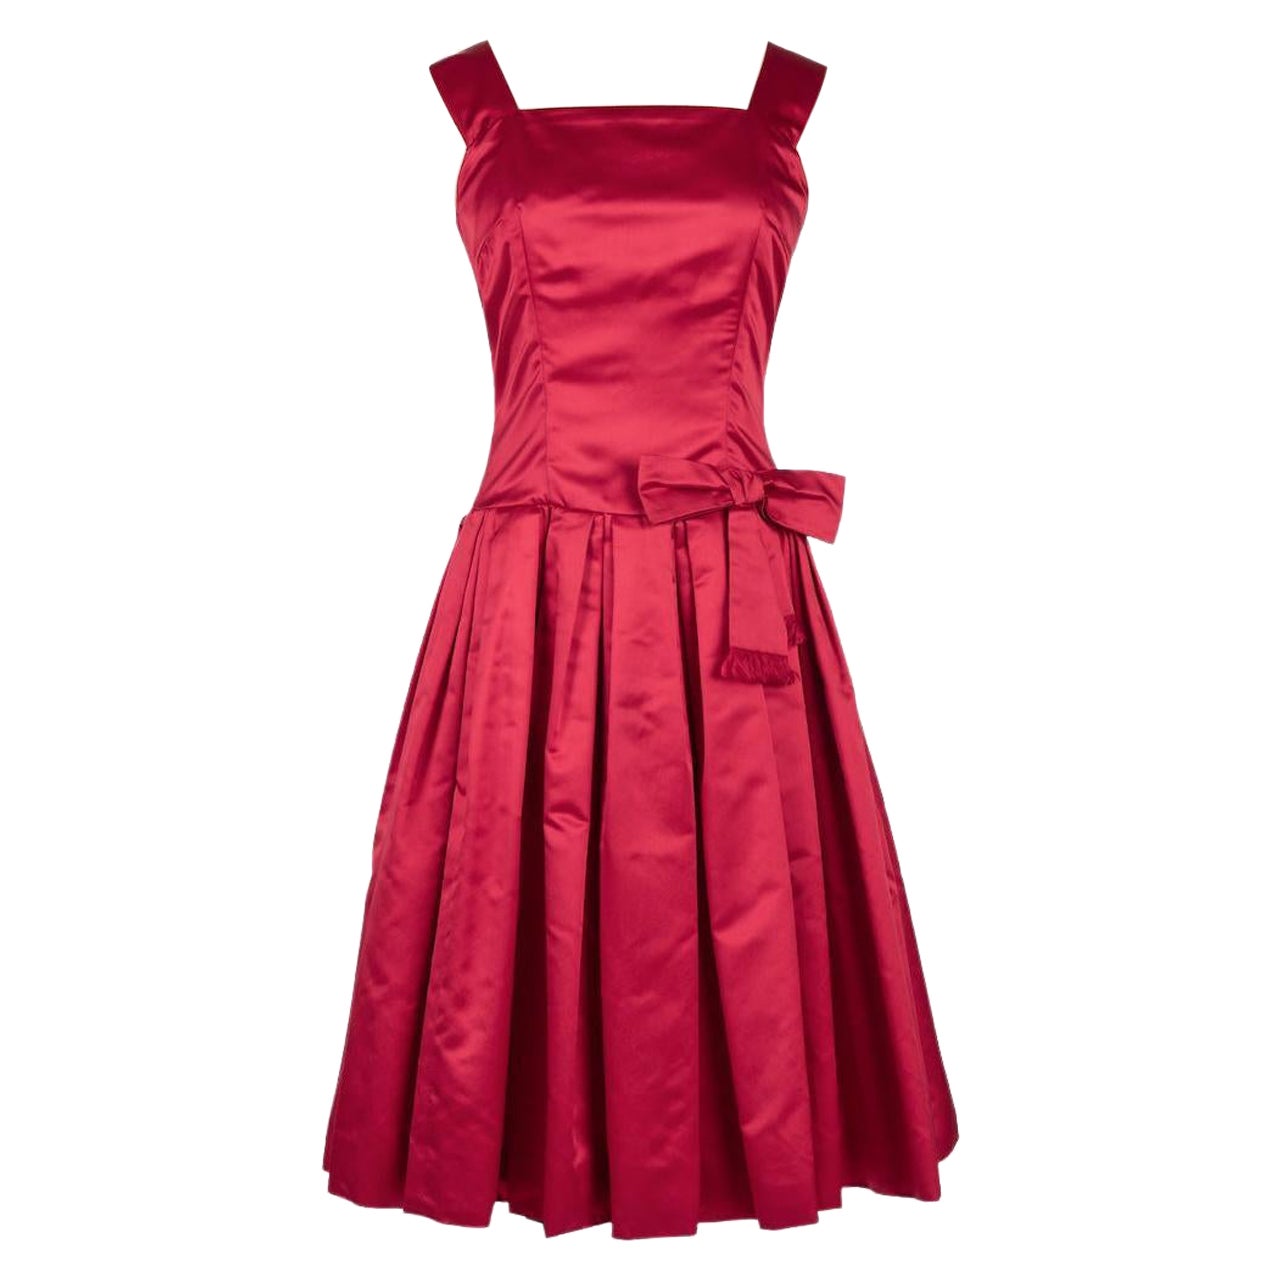 Von Fürstenberg Munich 1950s Bow Embellished Red Silk Couture Cocktail Dress For Sale